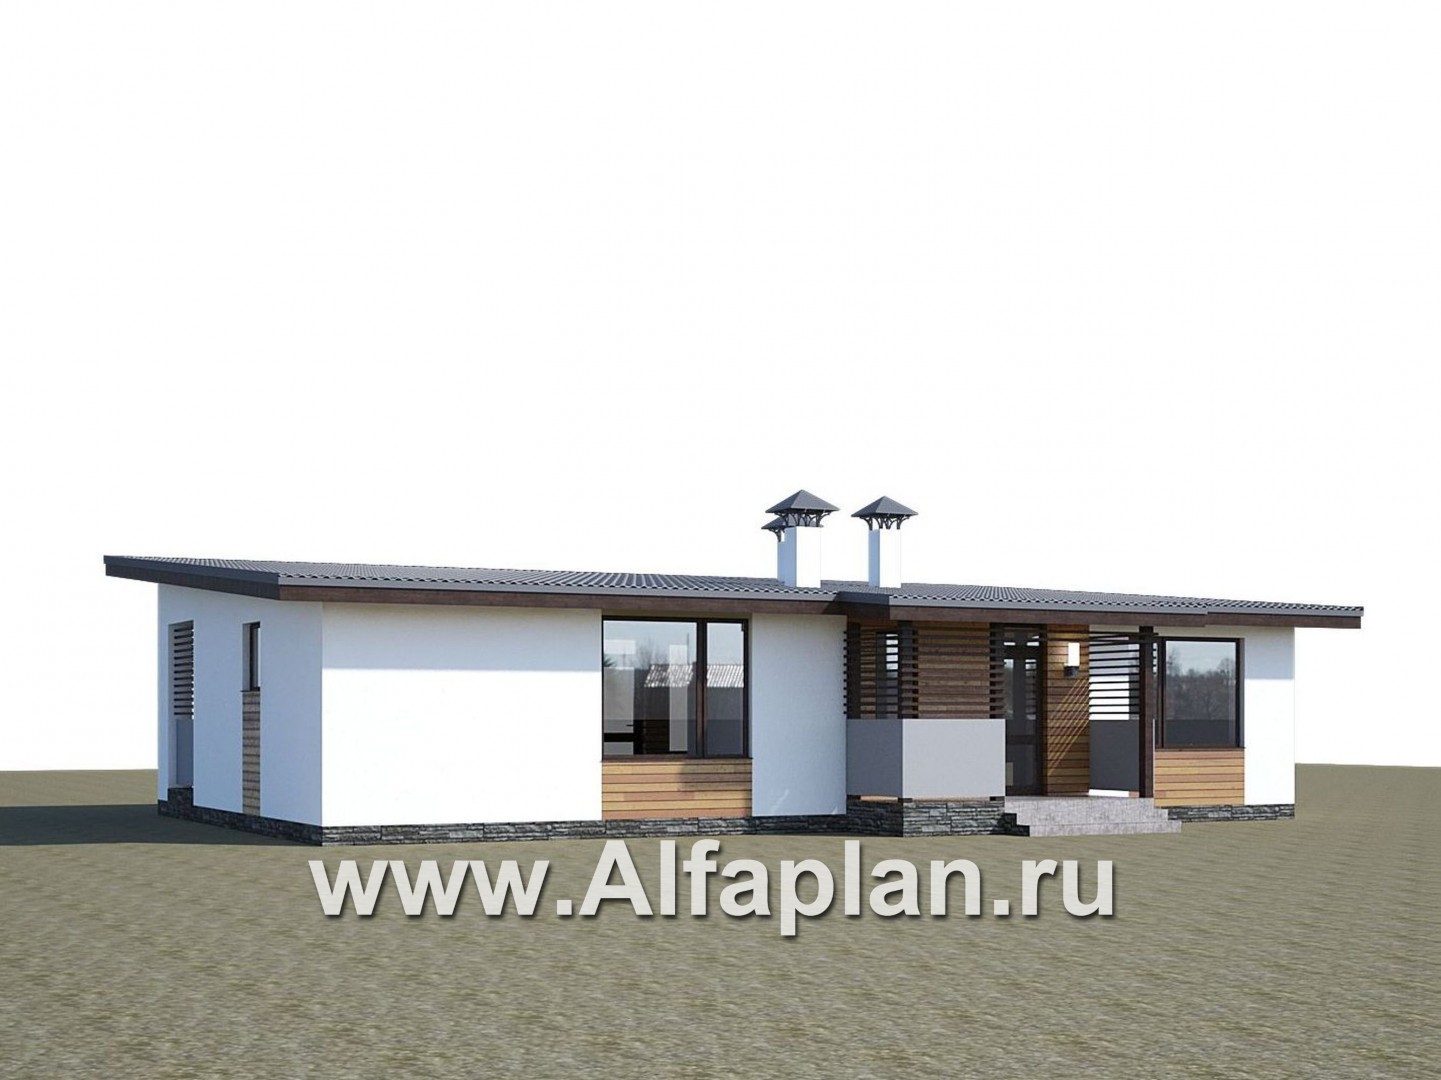 Проекты домов Альфаплан - «Зита» -  проект одноэтажного дома, с сауной, с джакузи на террасе,  в скандинавском стиле - дополнительное изображение №1